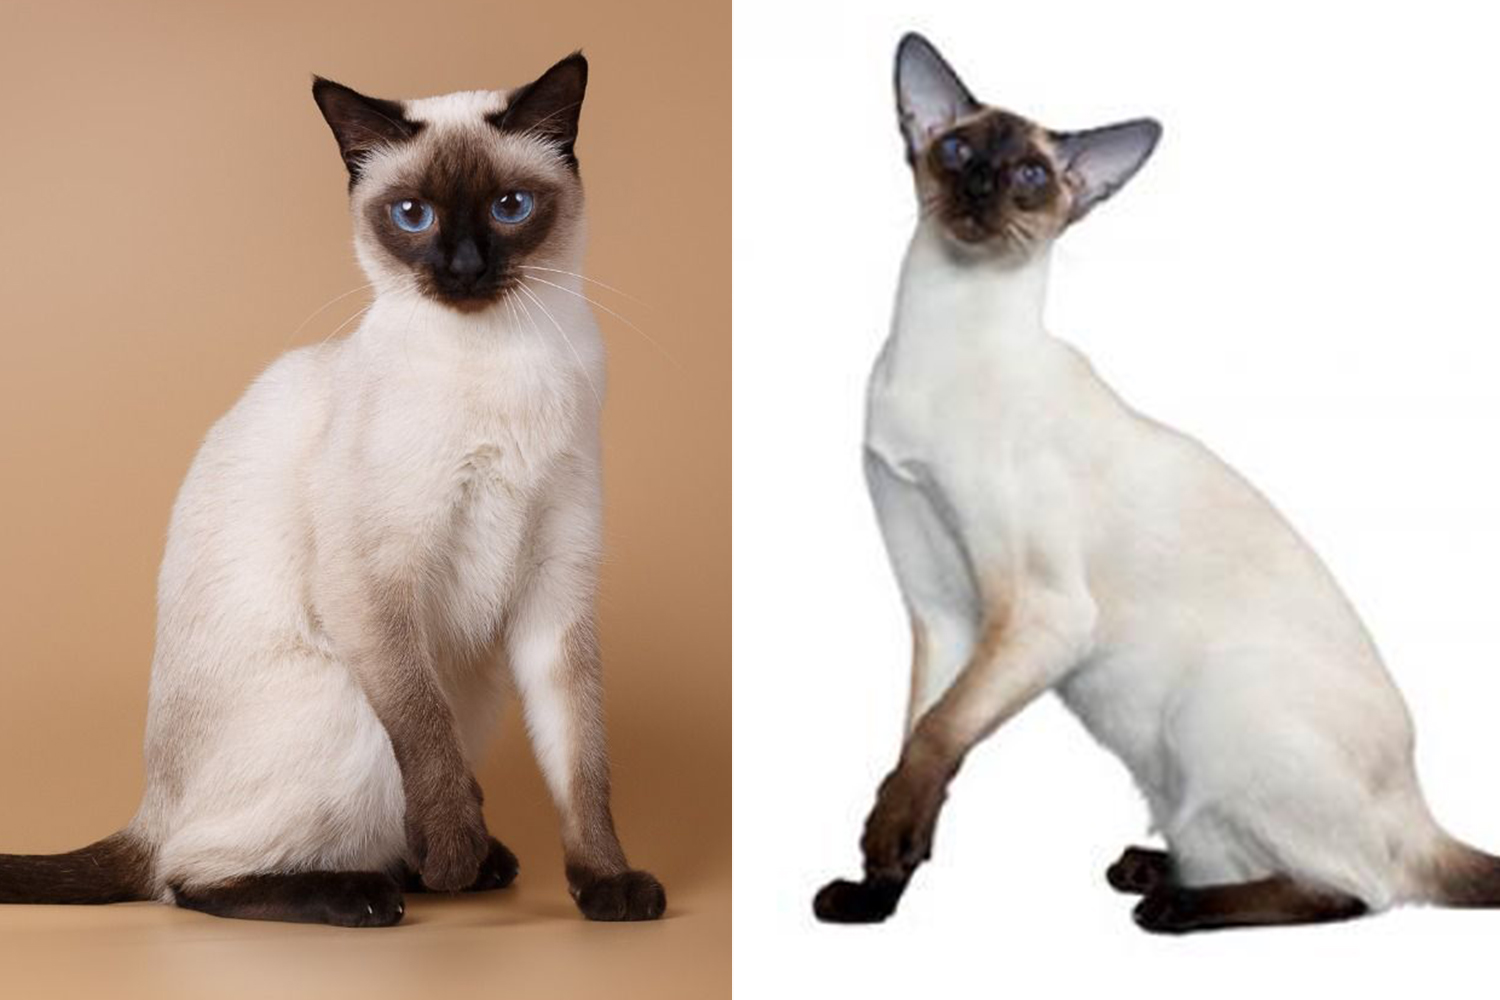 Кошки похожие на сиамских: породы, названия, отличительные особенности +видео